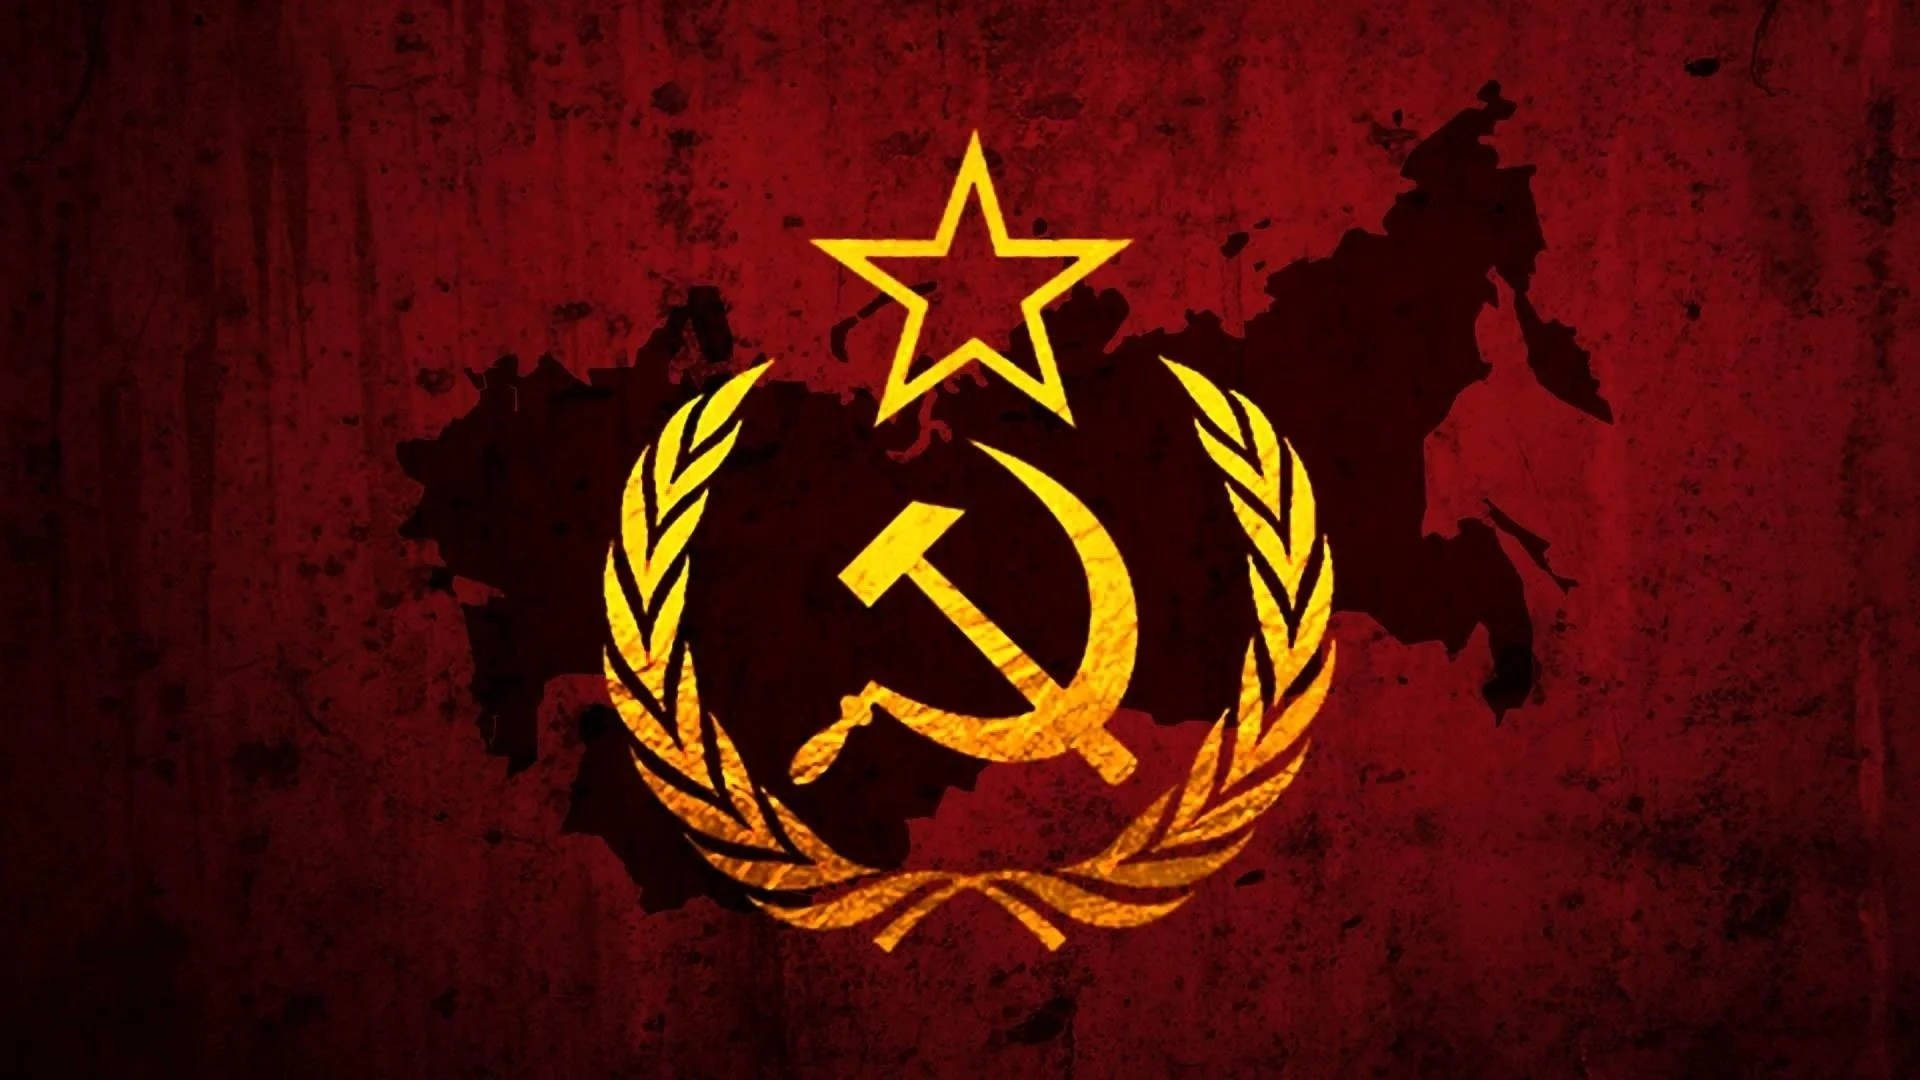 Sovjetunionensflagga På Rysk Karta. Wallpaper